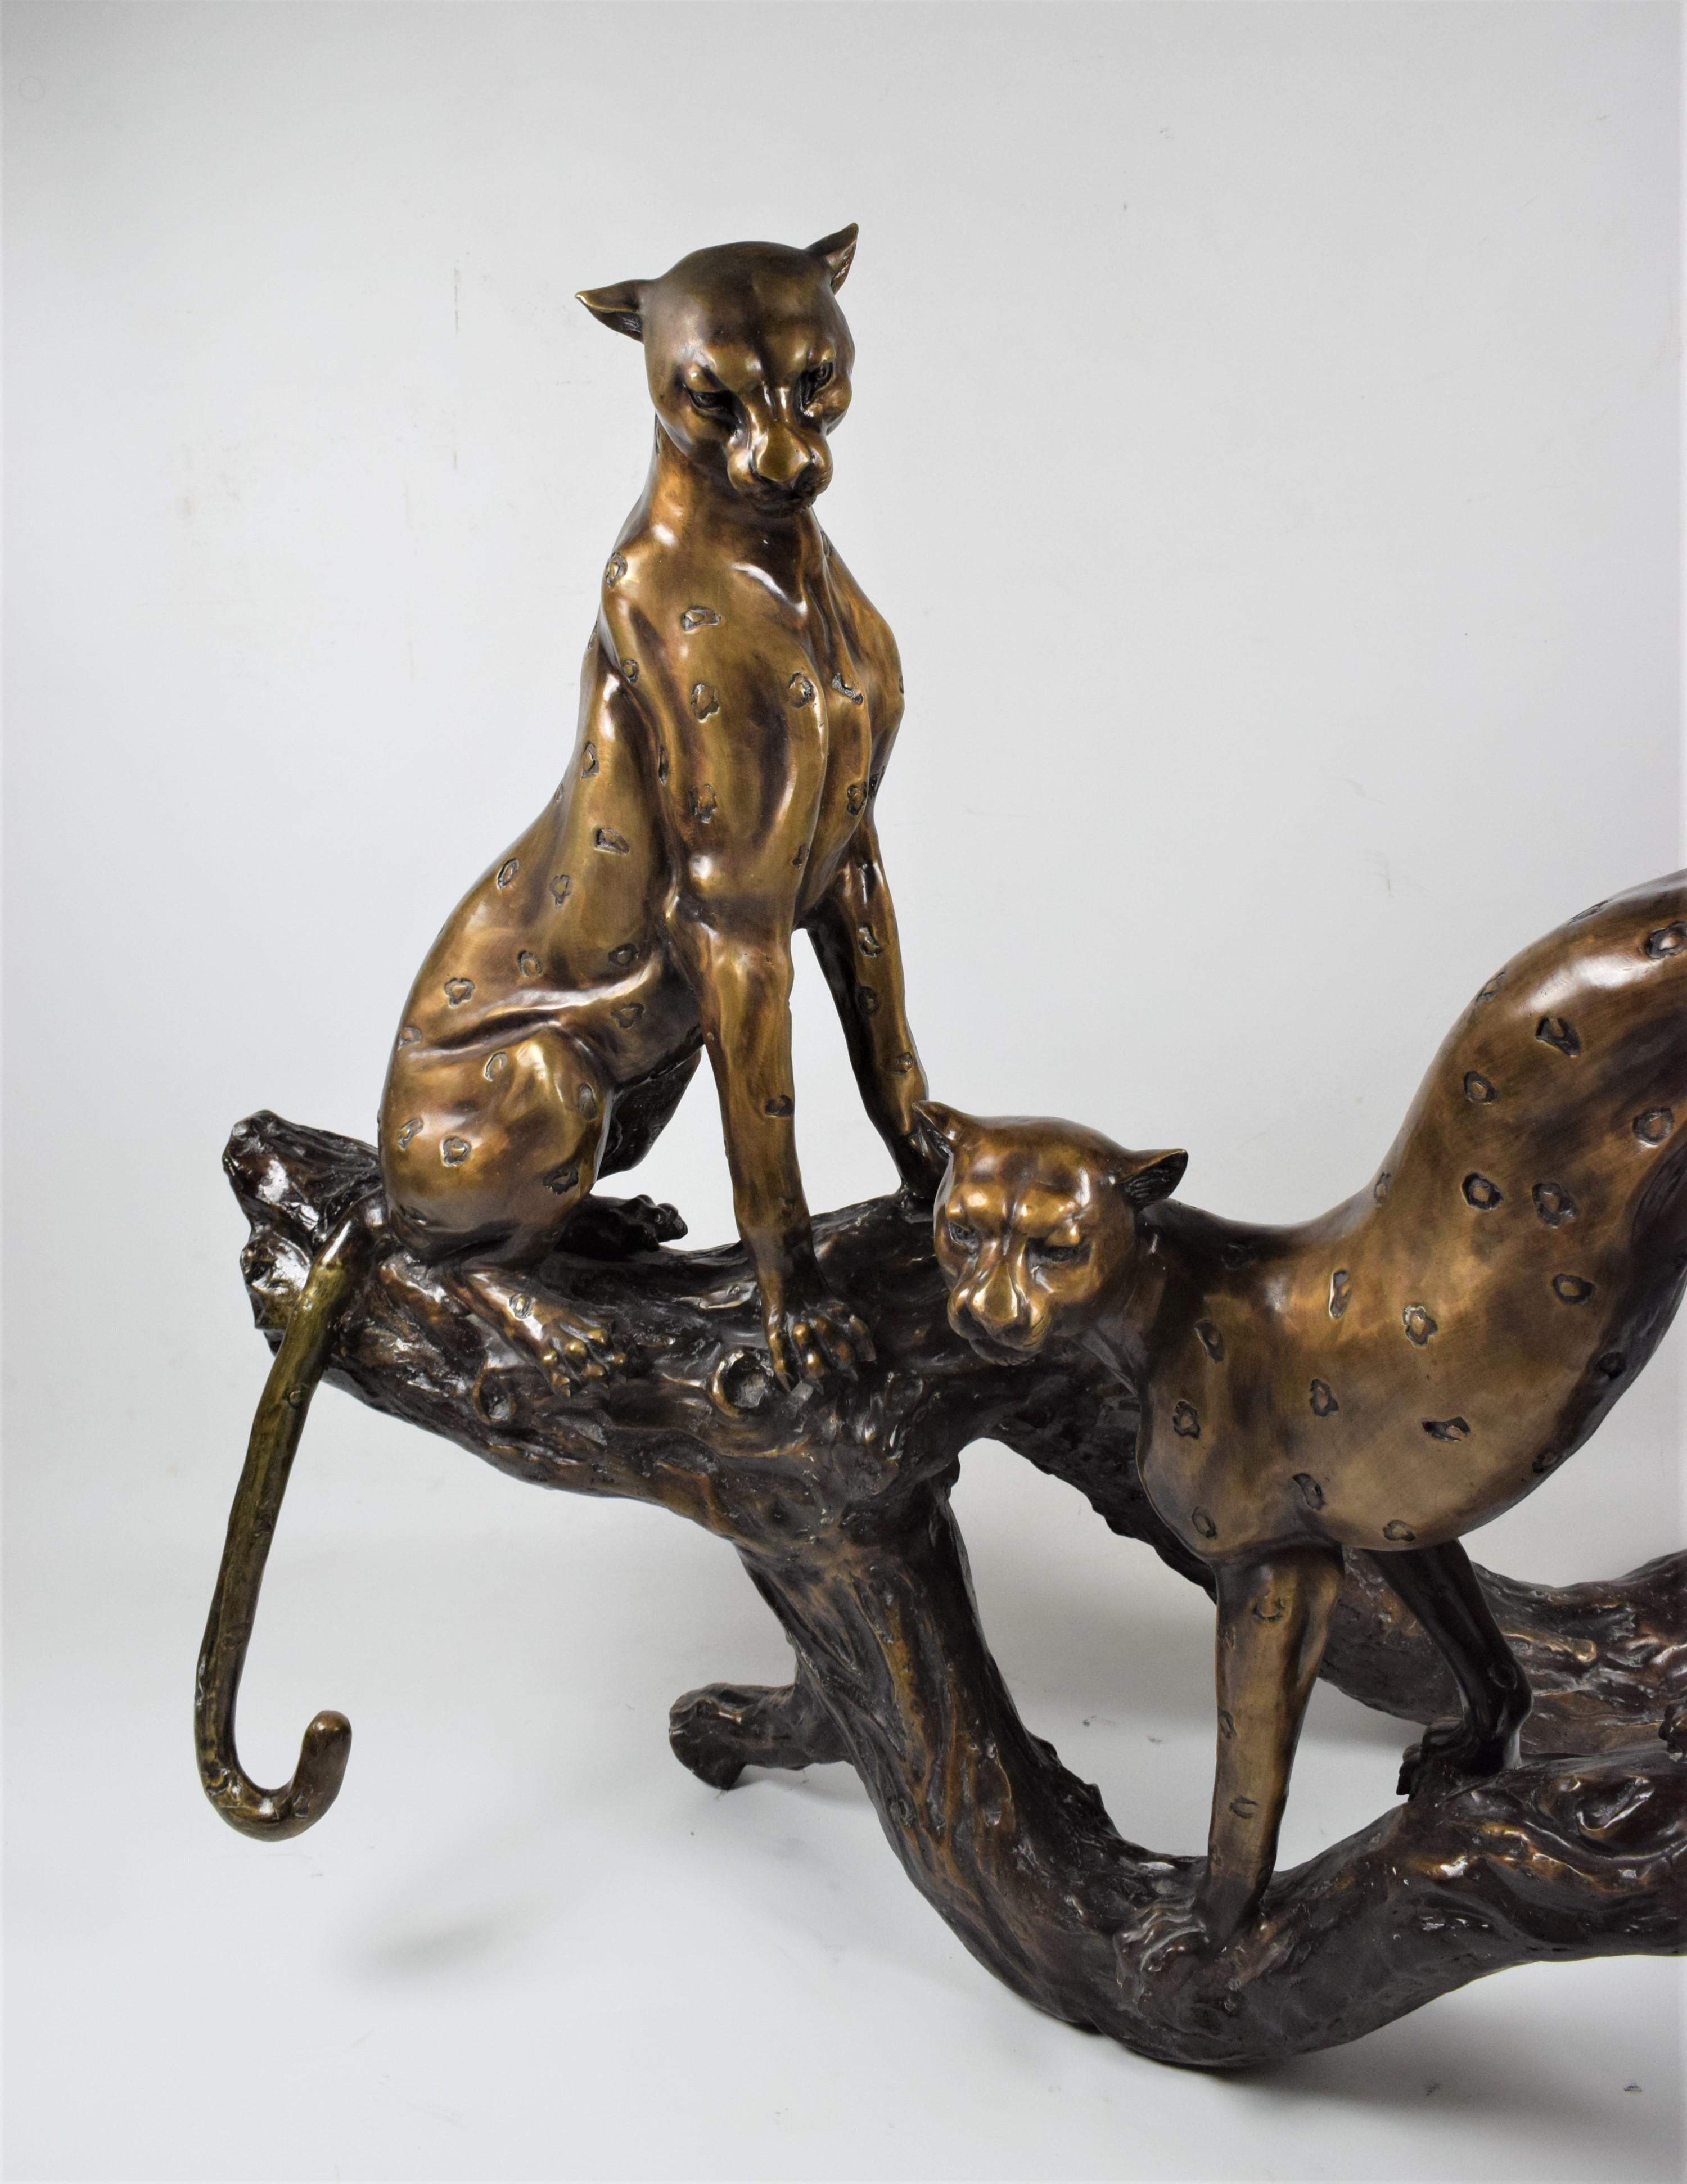 La sculpture art déco en bronze représente une scène captivante mettant en scène deux guépards dans une pose détendue mais alerte, perchés sur un tronc d'arbre majestueux. D'une facture exquise, la sculpture capture la grâce et l'élégance de ces